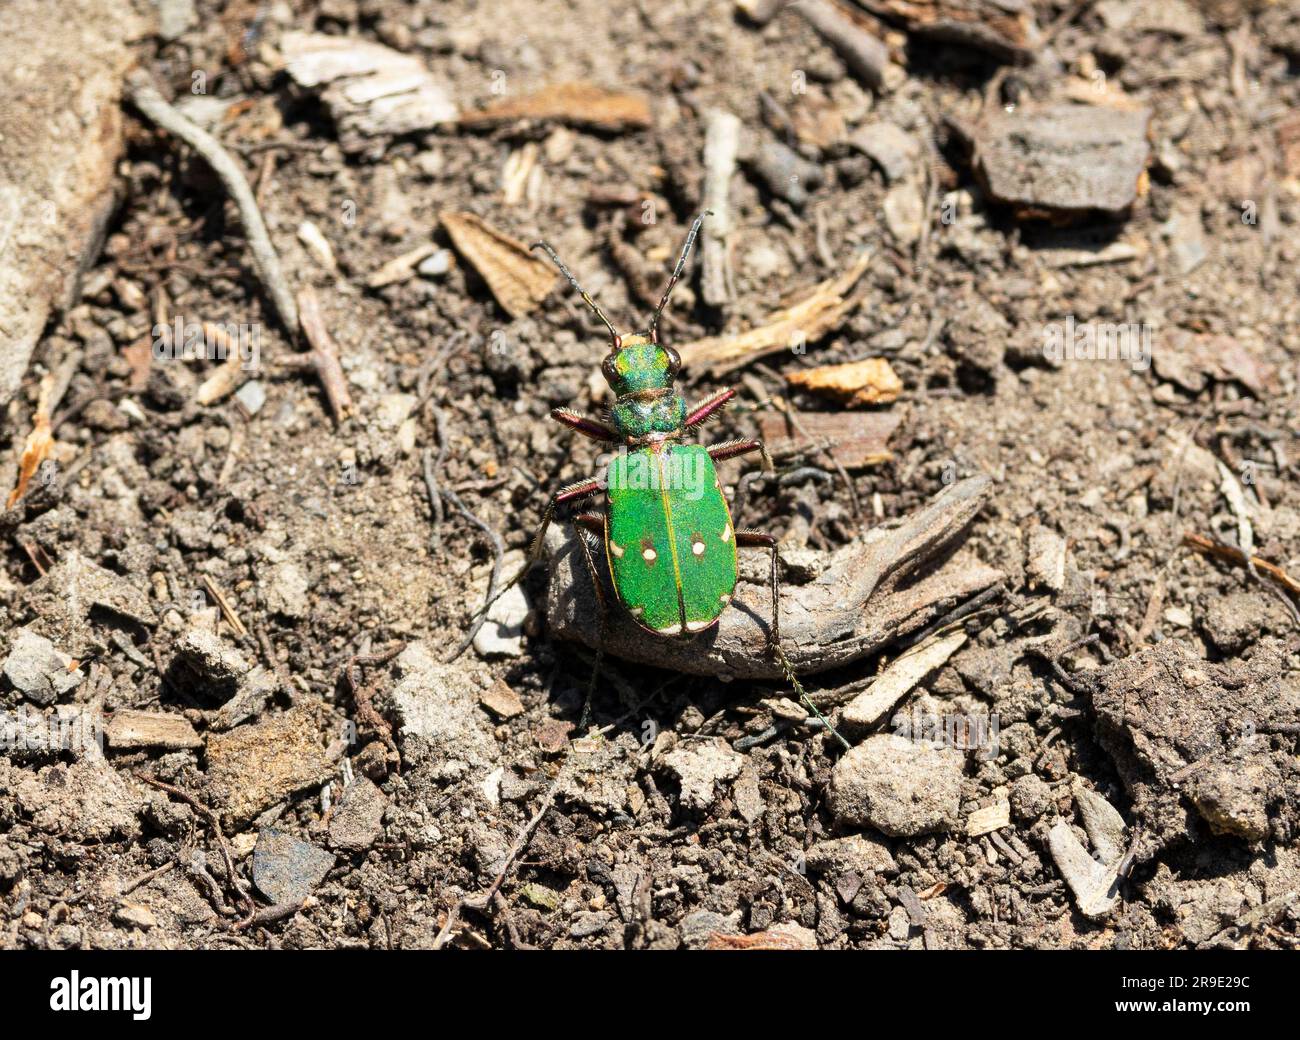 Der Green Tiger Beetle ist im Sommer auf Heiden und Moorland üblich. Sie sind schnell schillernde Raubtiere anderer wirbelloser Tiere. Das Essen ist ein M Stockfoto